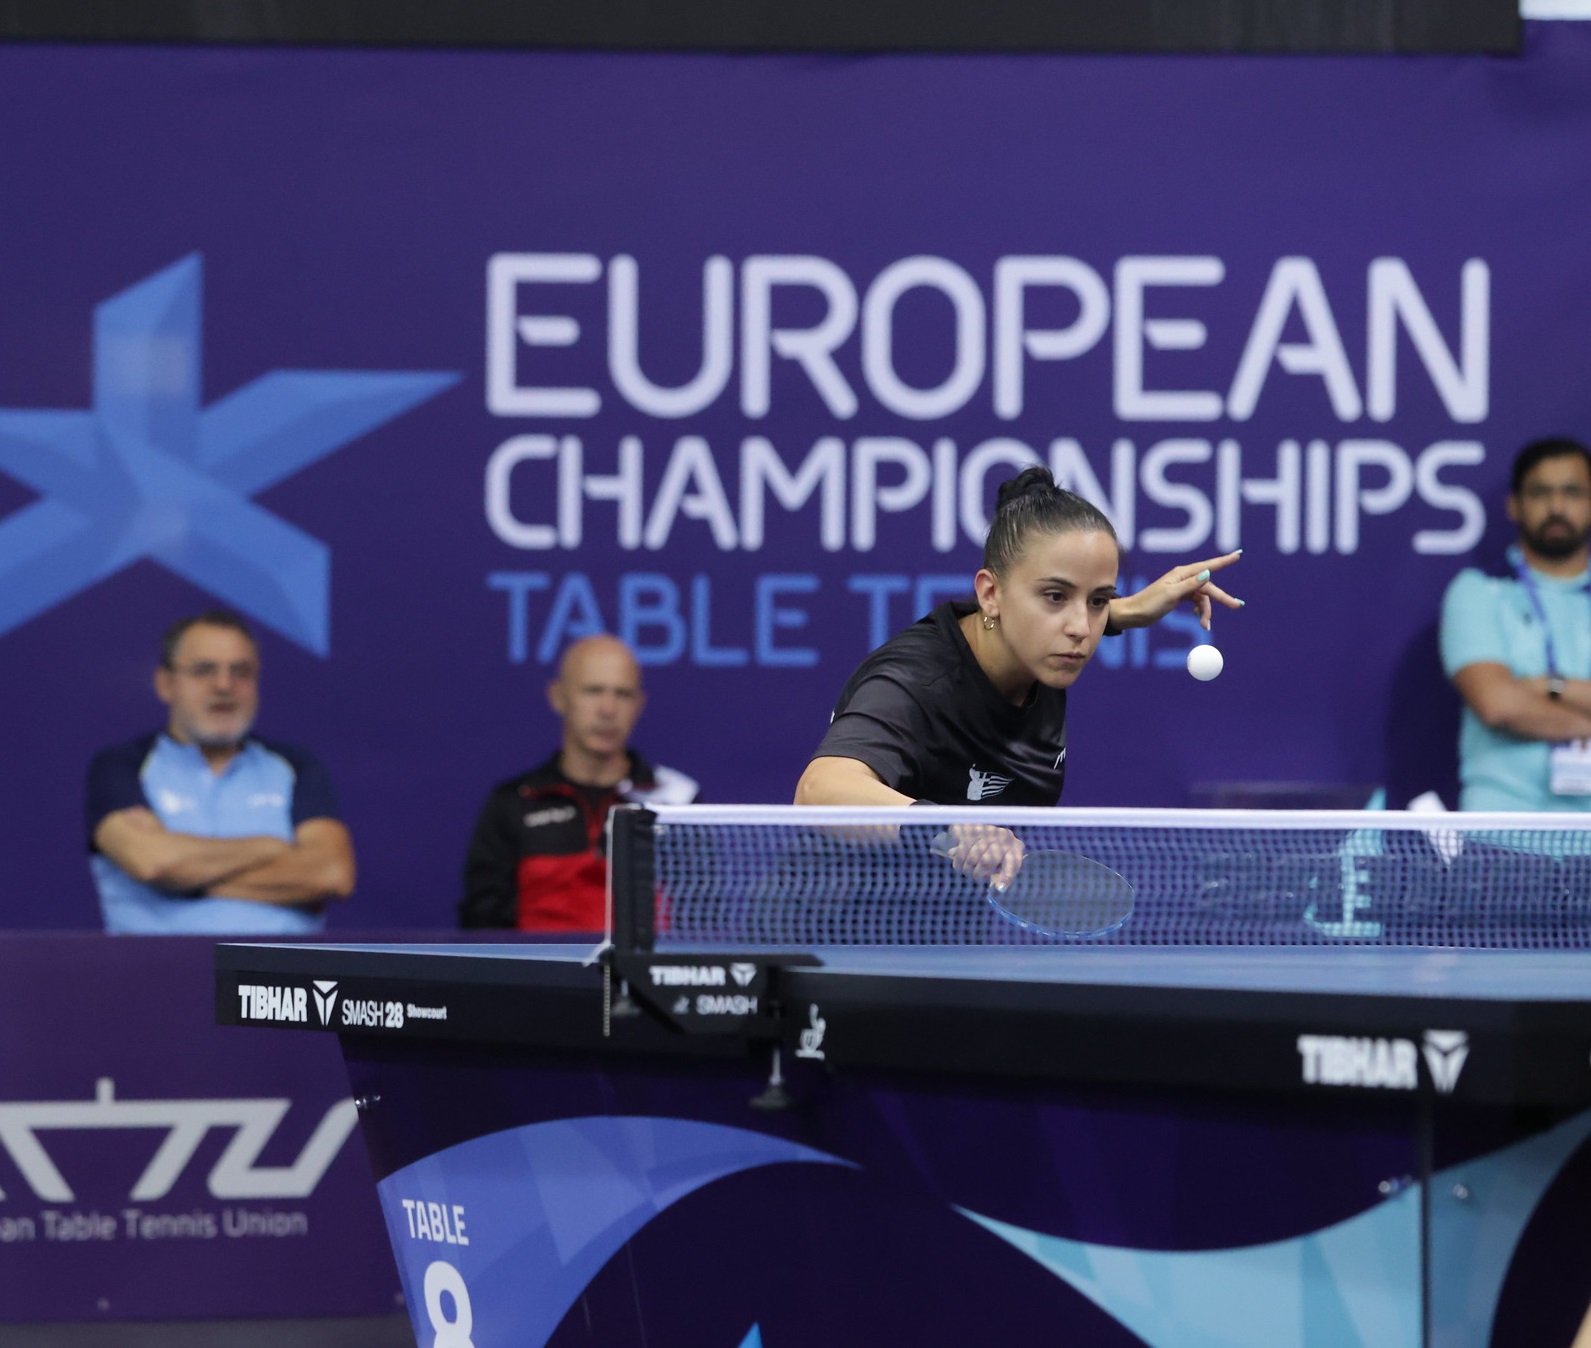 Ευρωπαϊκό πρωτάθλημα ατομικών: Καλή αρχή από την Τόλιου στο απλό, έχασε ευκαιρία για πολύτιμη νίκη η Παρίδη